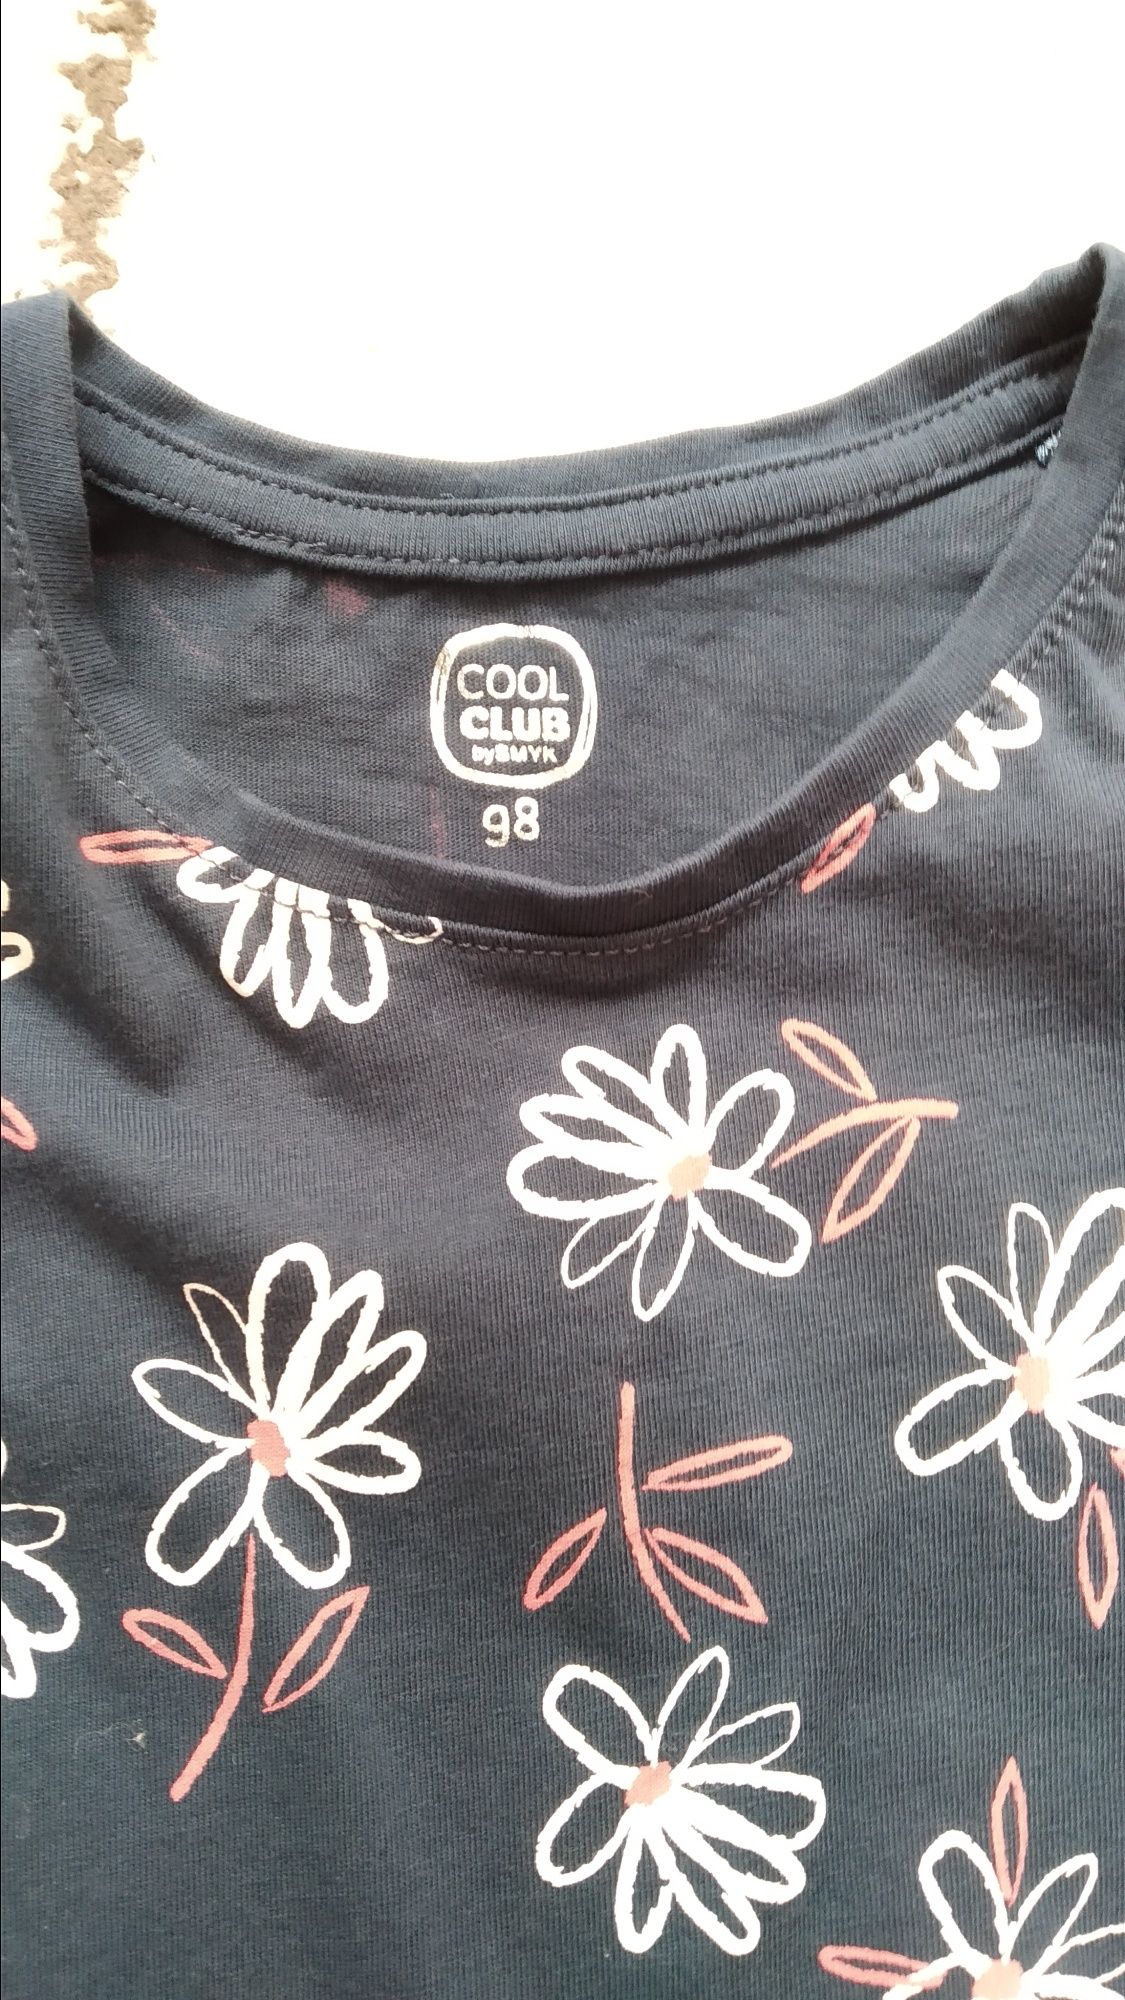 Sukienka 98 cool club spódnica KIK